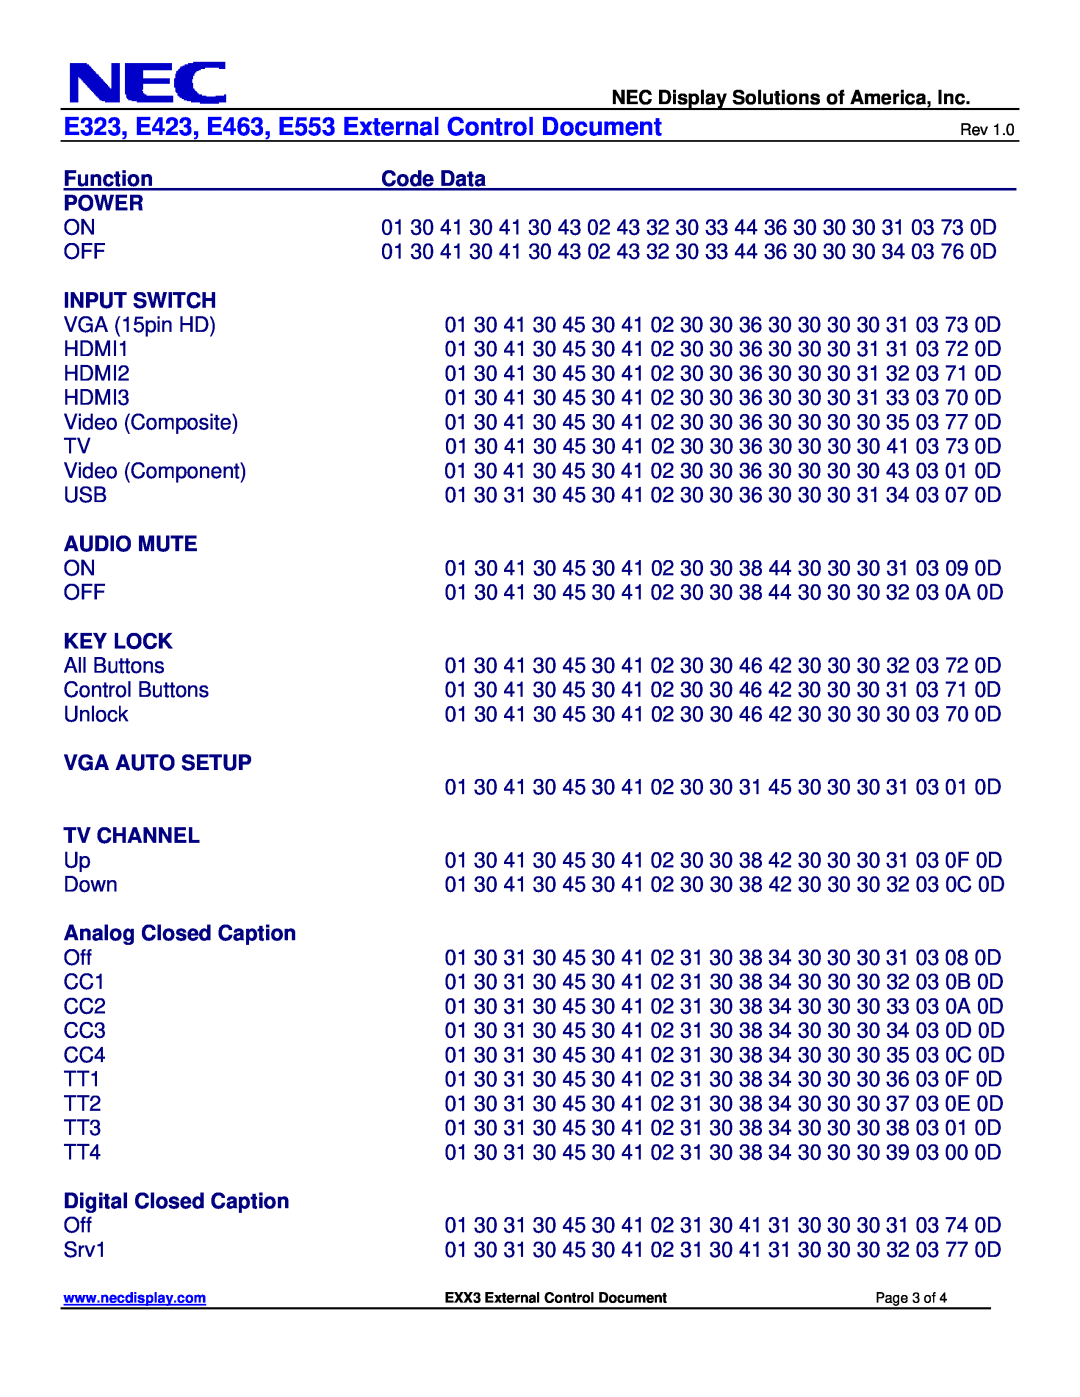 NEC manual E323, E423, E463, E553 External Control Document, Function 